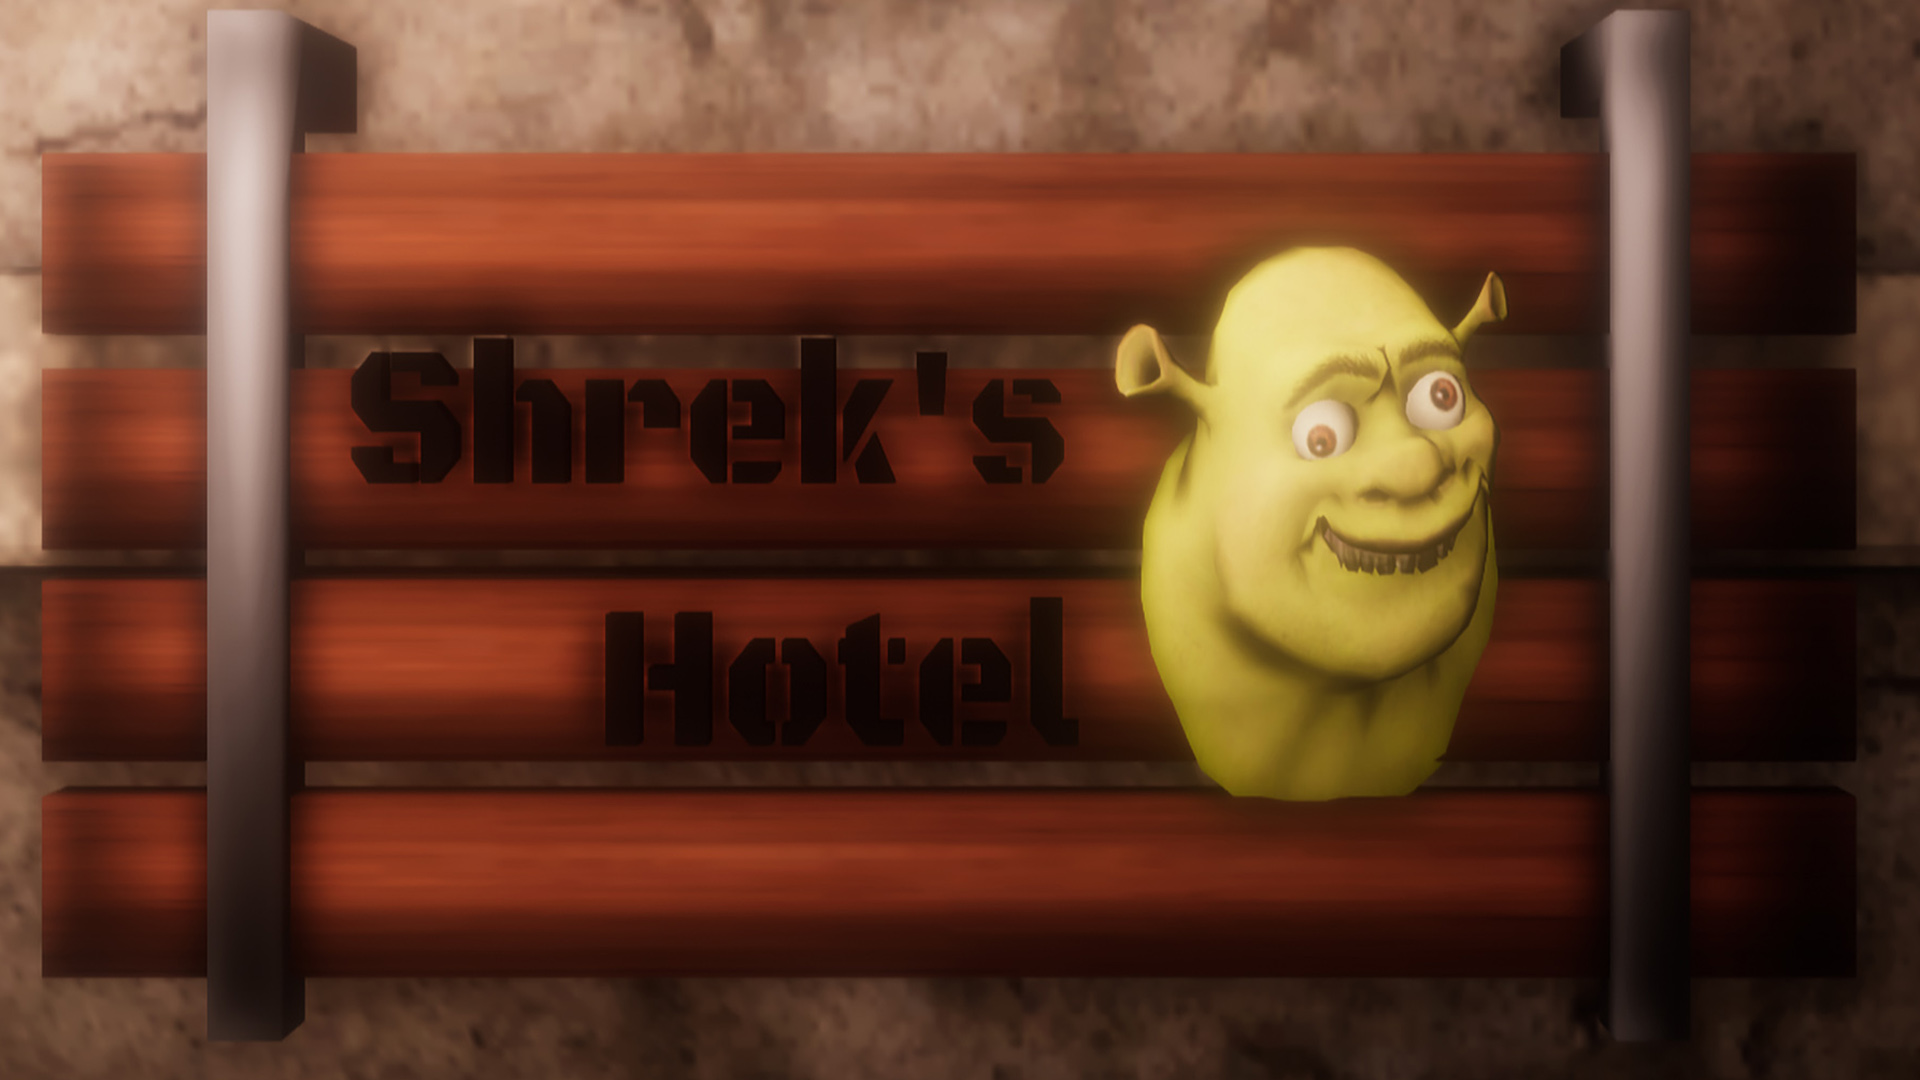 5 ночей в отеле шрека хоррор. Отель Шрека игра. 5 Nights at Shrek's Hotel. Пять ночей в отеле Шрека.